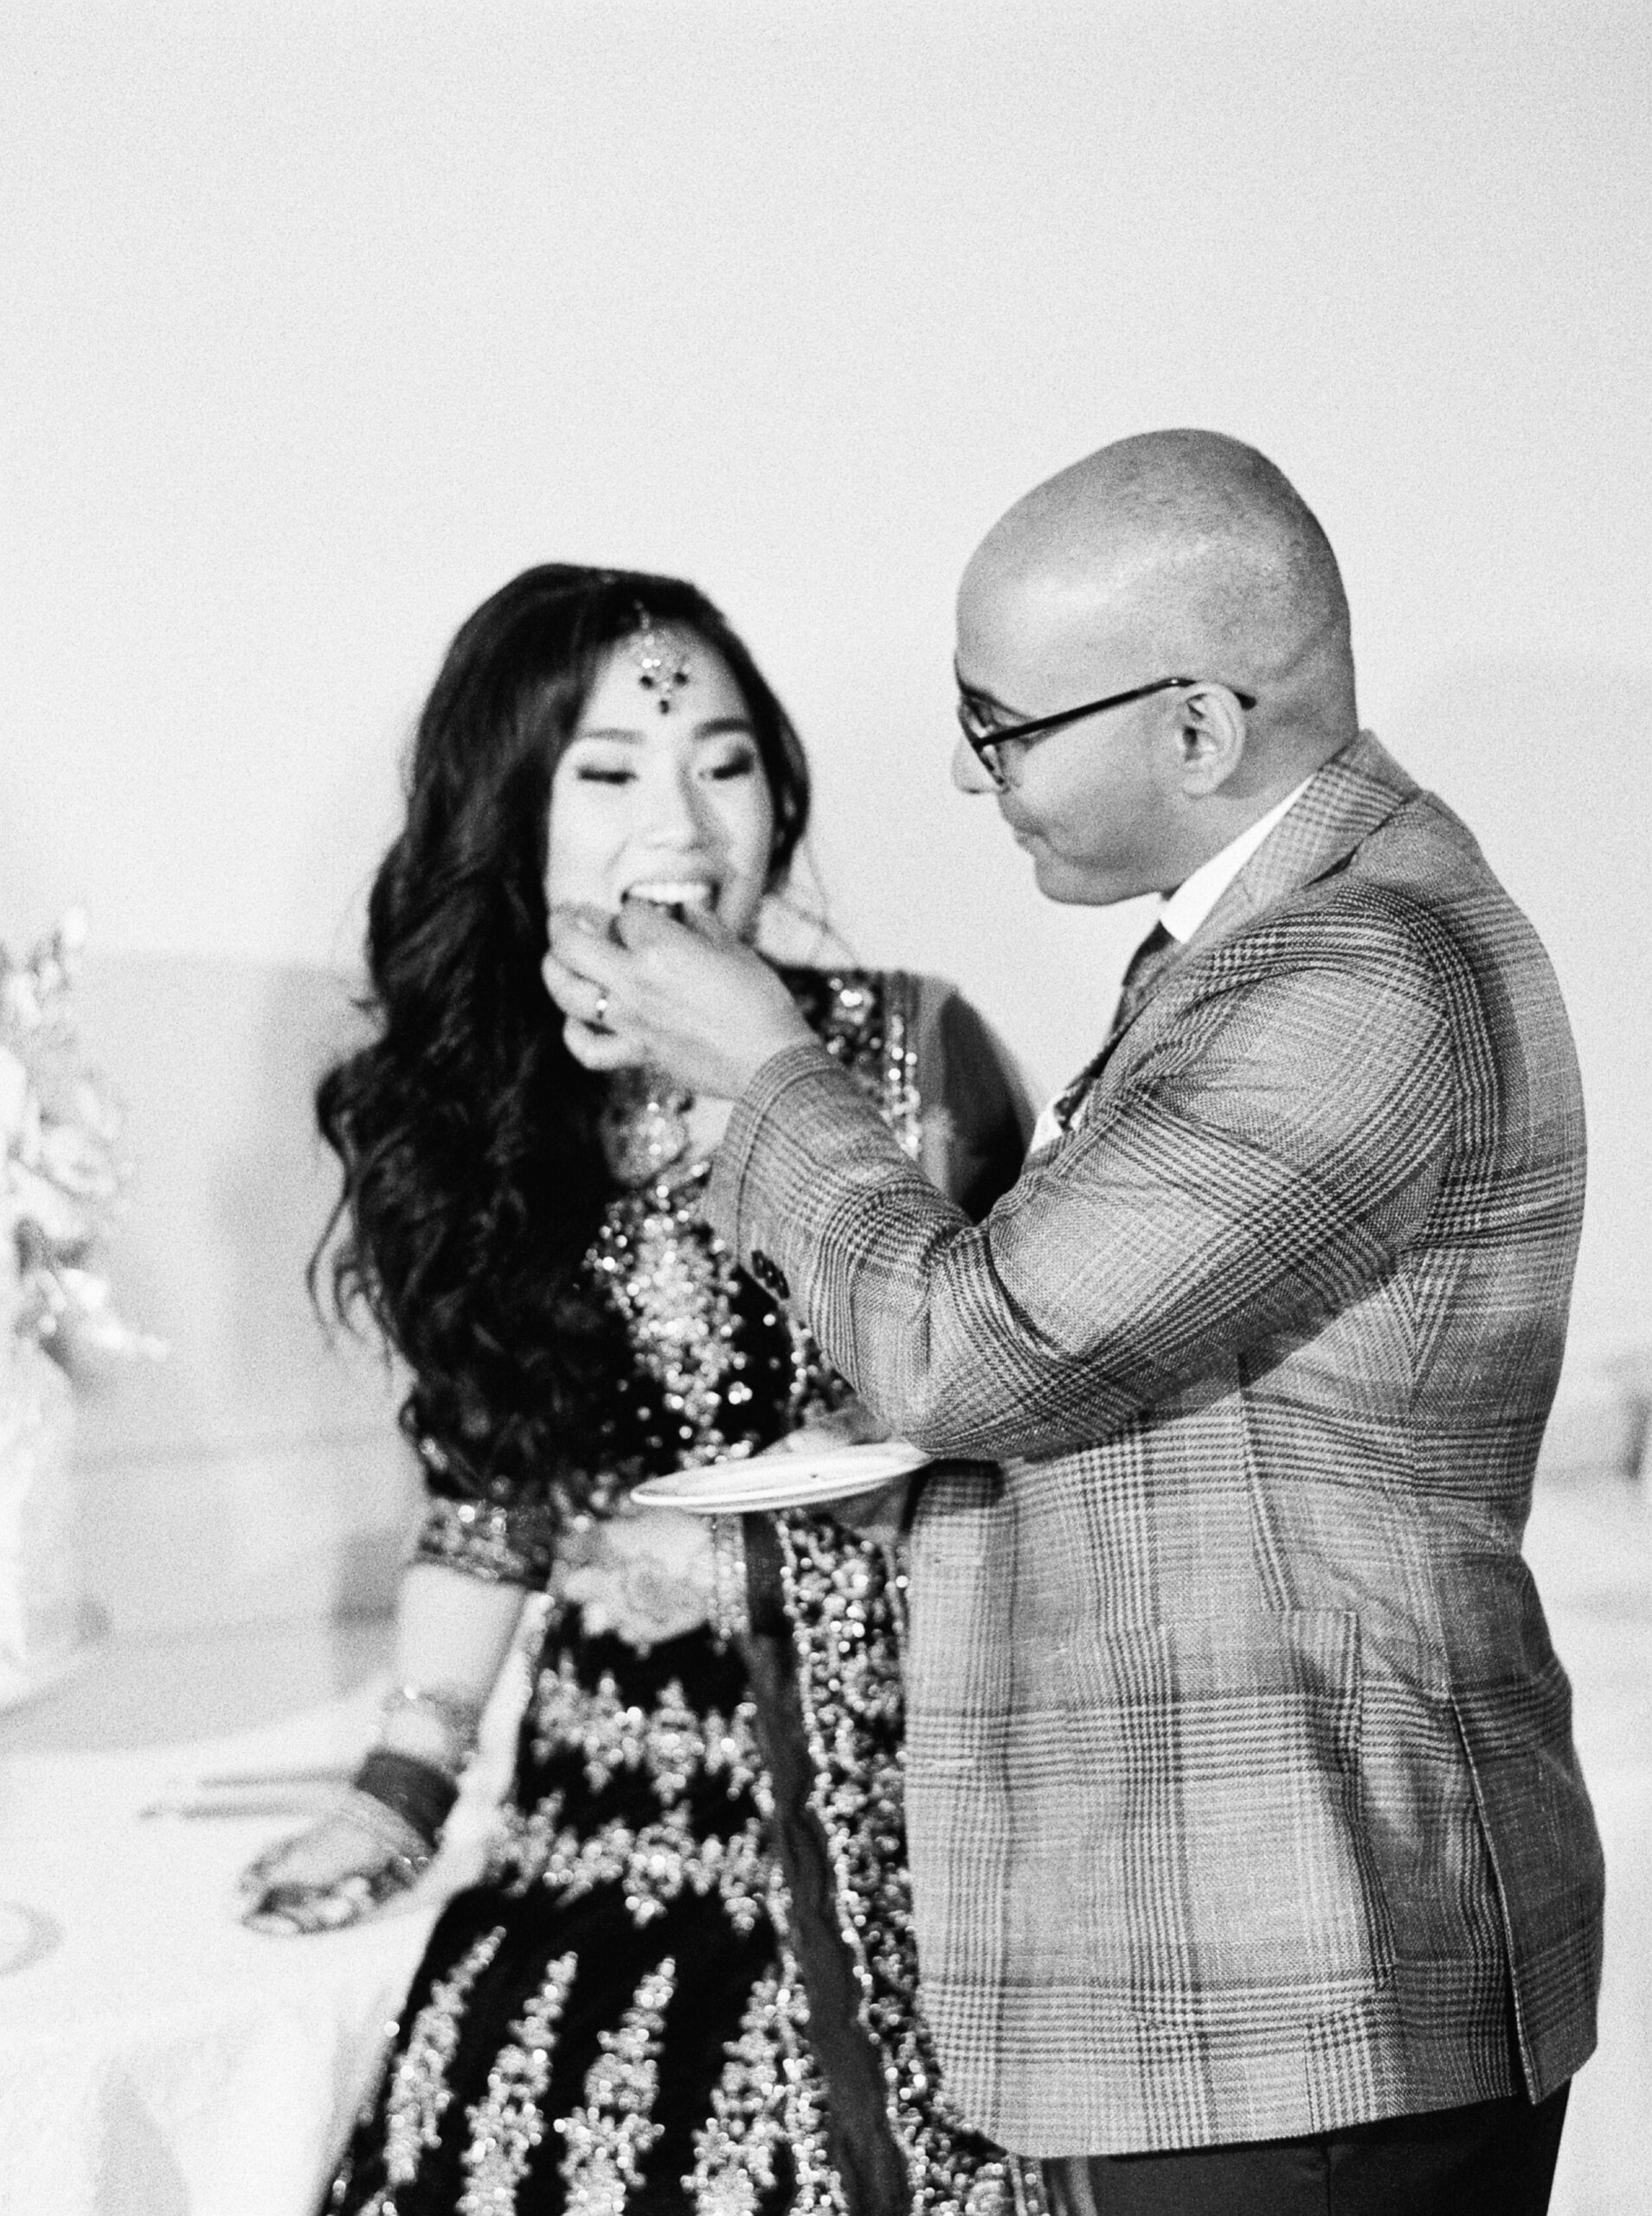  Cake cutting on black and white film | Indian Chinese Fusion Wedding | Calgary wedding photographers 